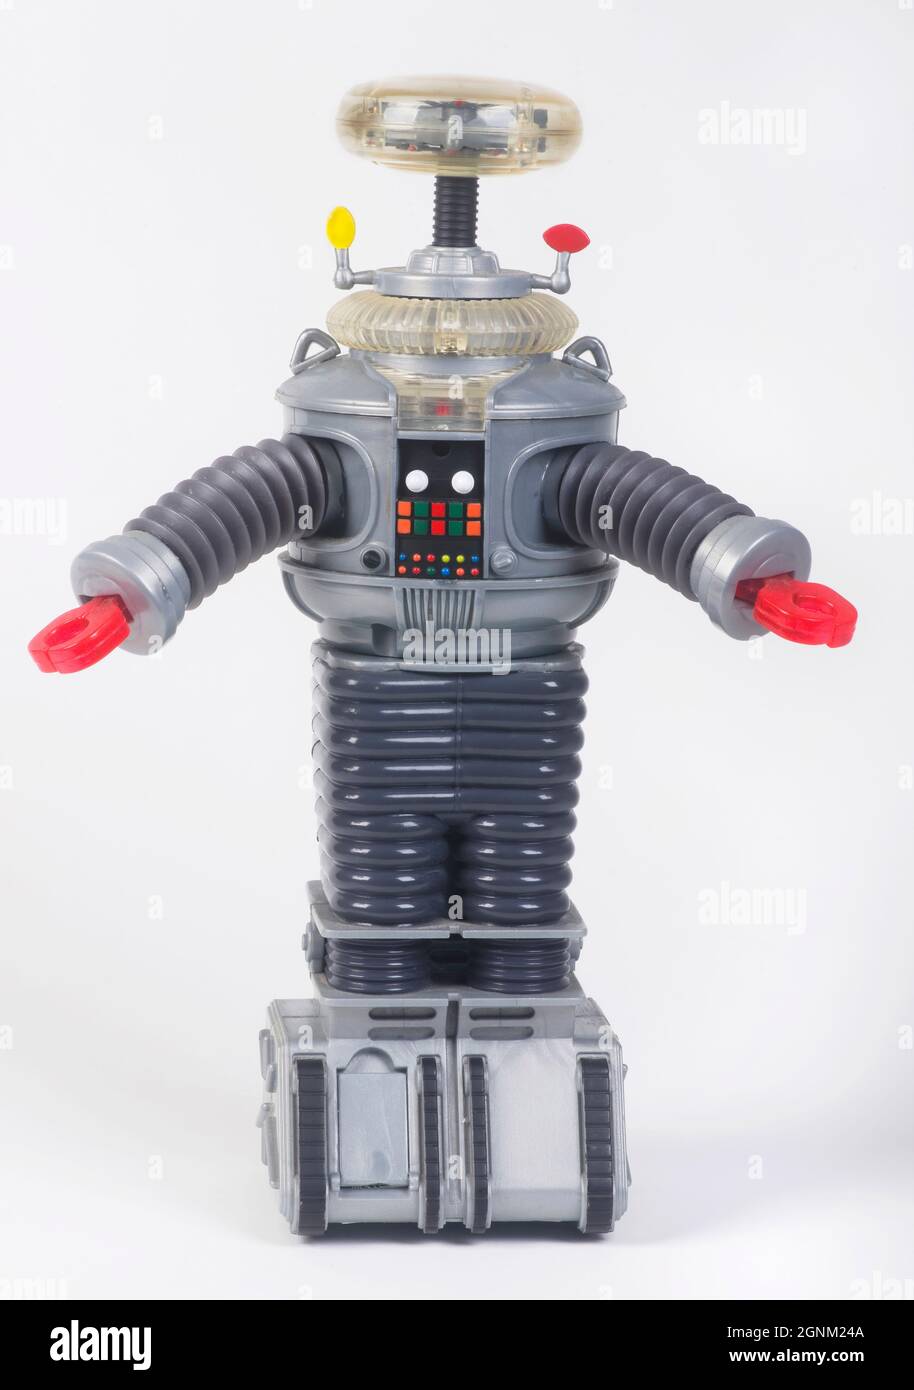 Fort Worth, Texas - dal 25.2021 settembre si è perso nello Space Toy dal 1965-1968 show televisivo. Il robot era conosciuto come "il robot", aveva 6'8 e 550 libbre Foto Stock